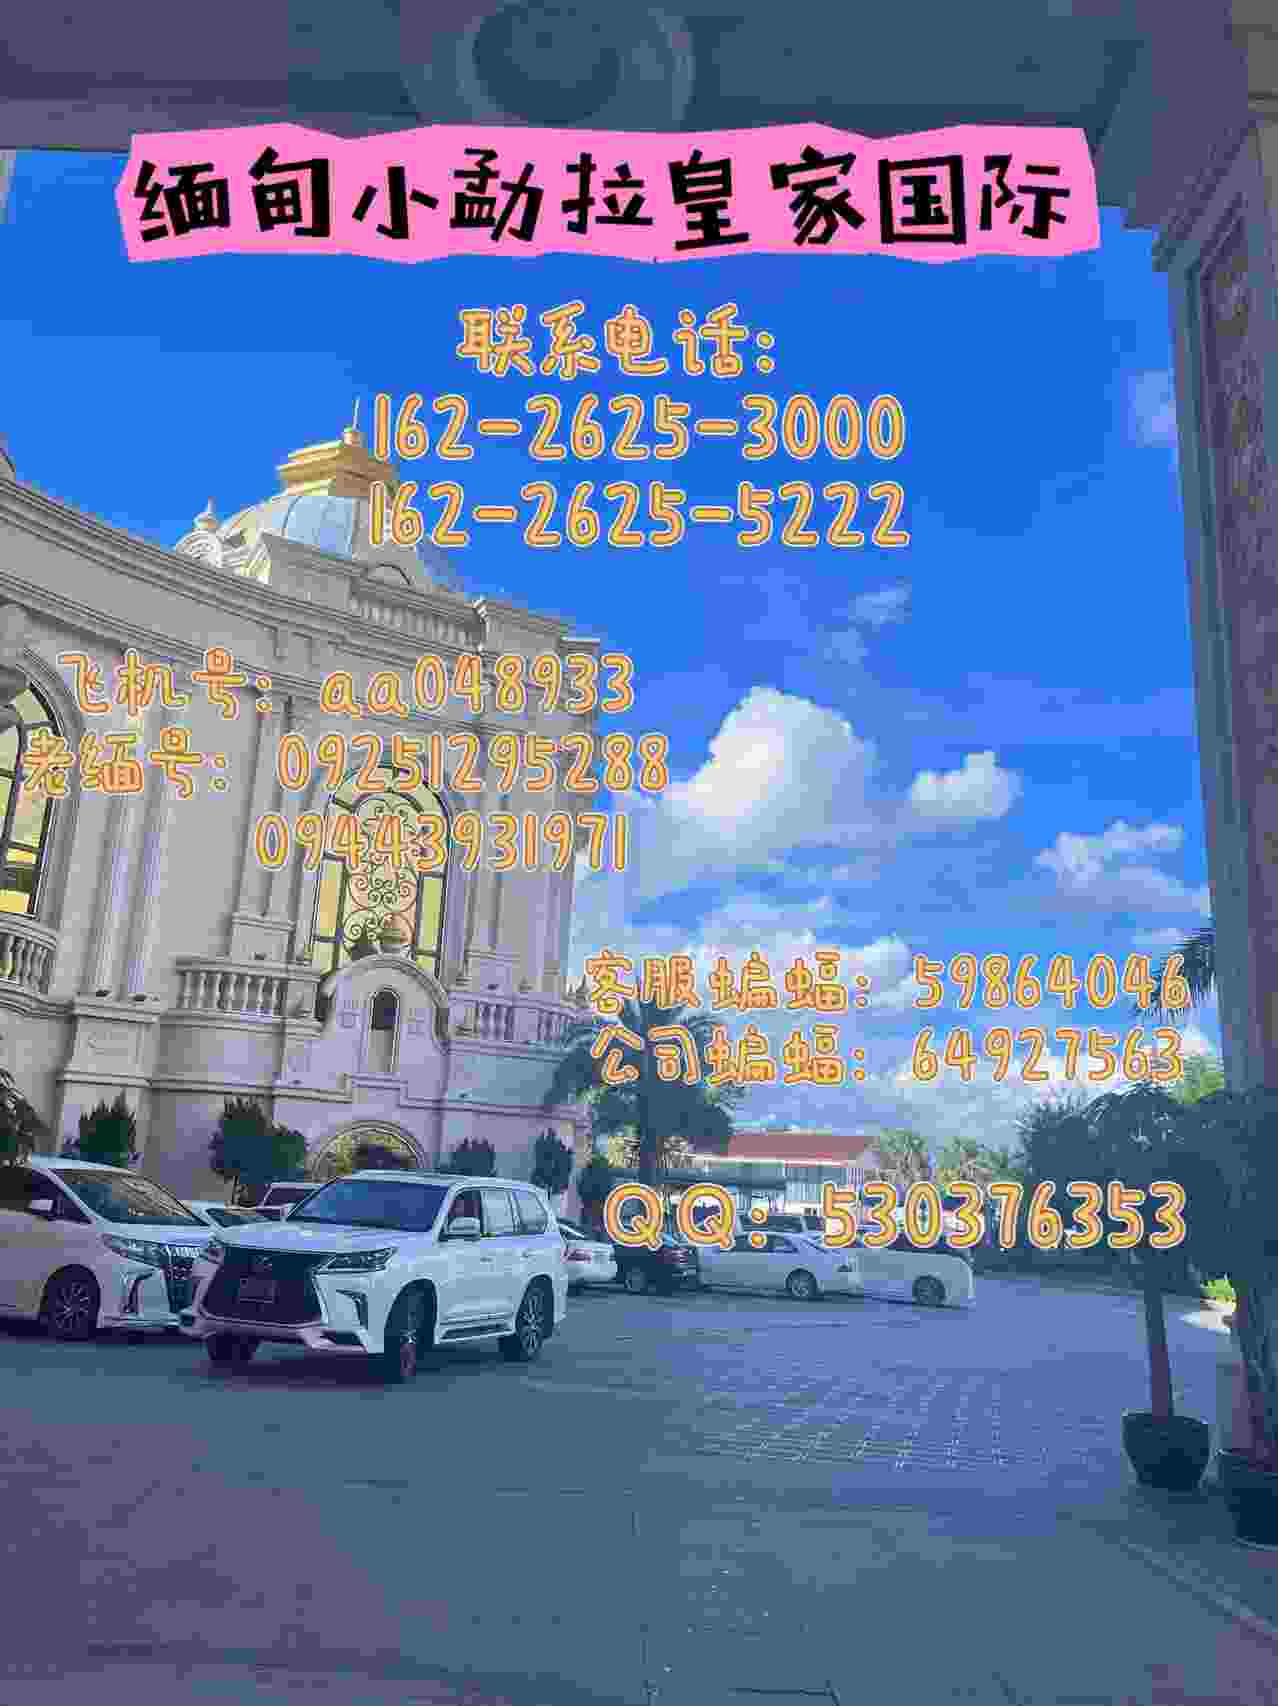 缅 甸小勐拉皇 家厅点击客服开户联系电话：162-2625-3000